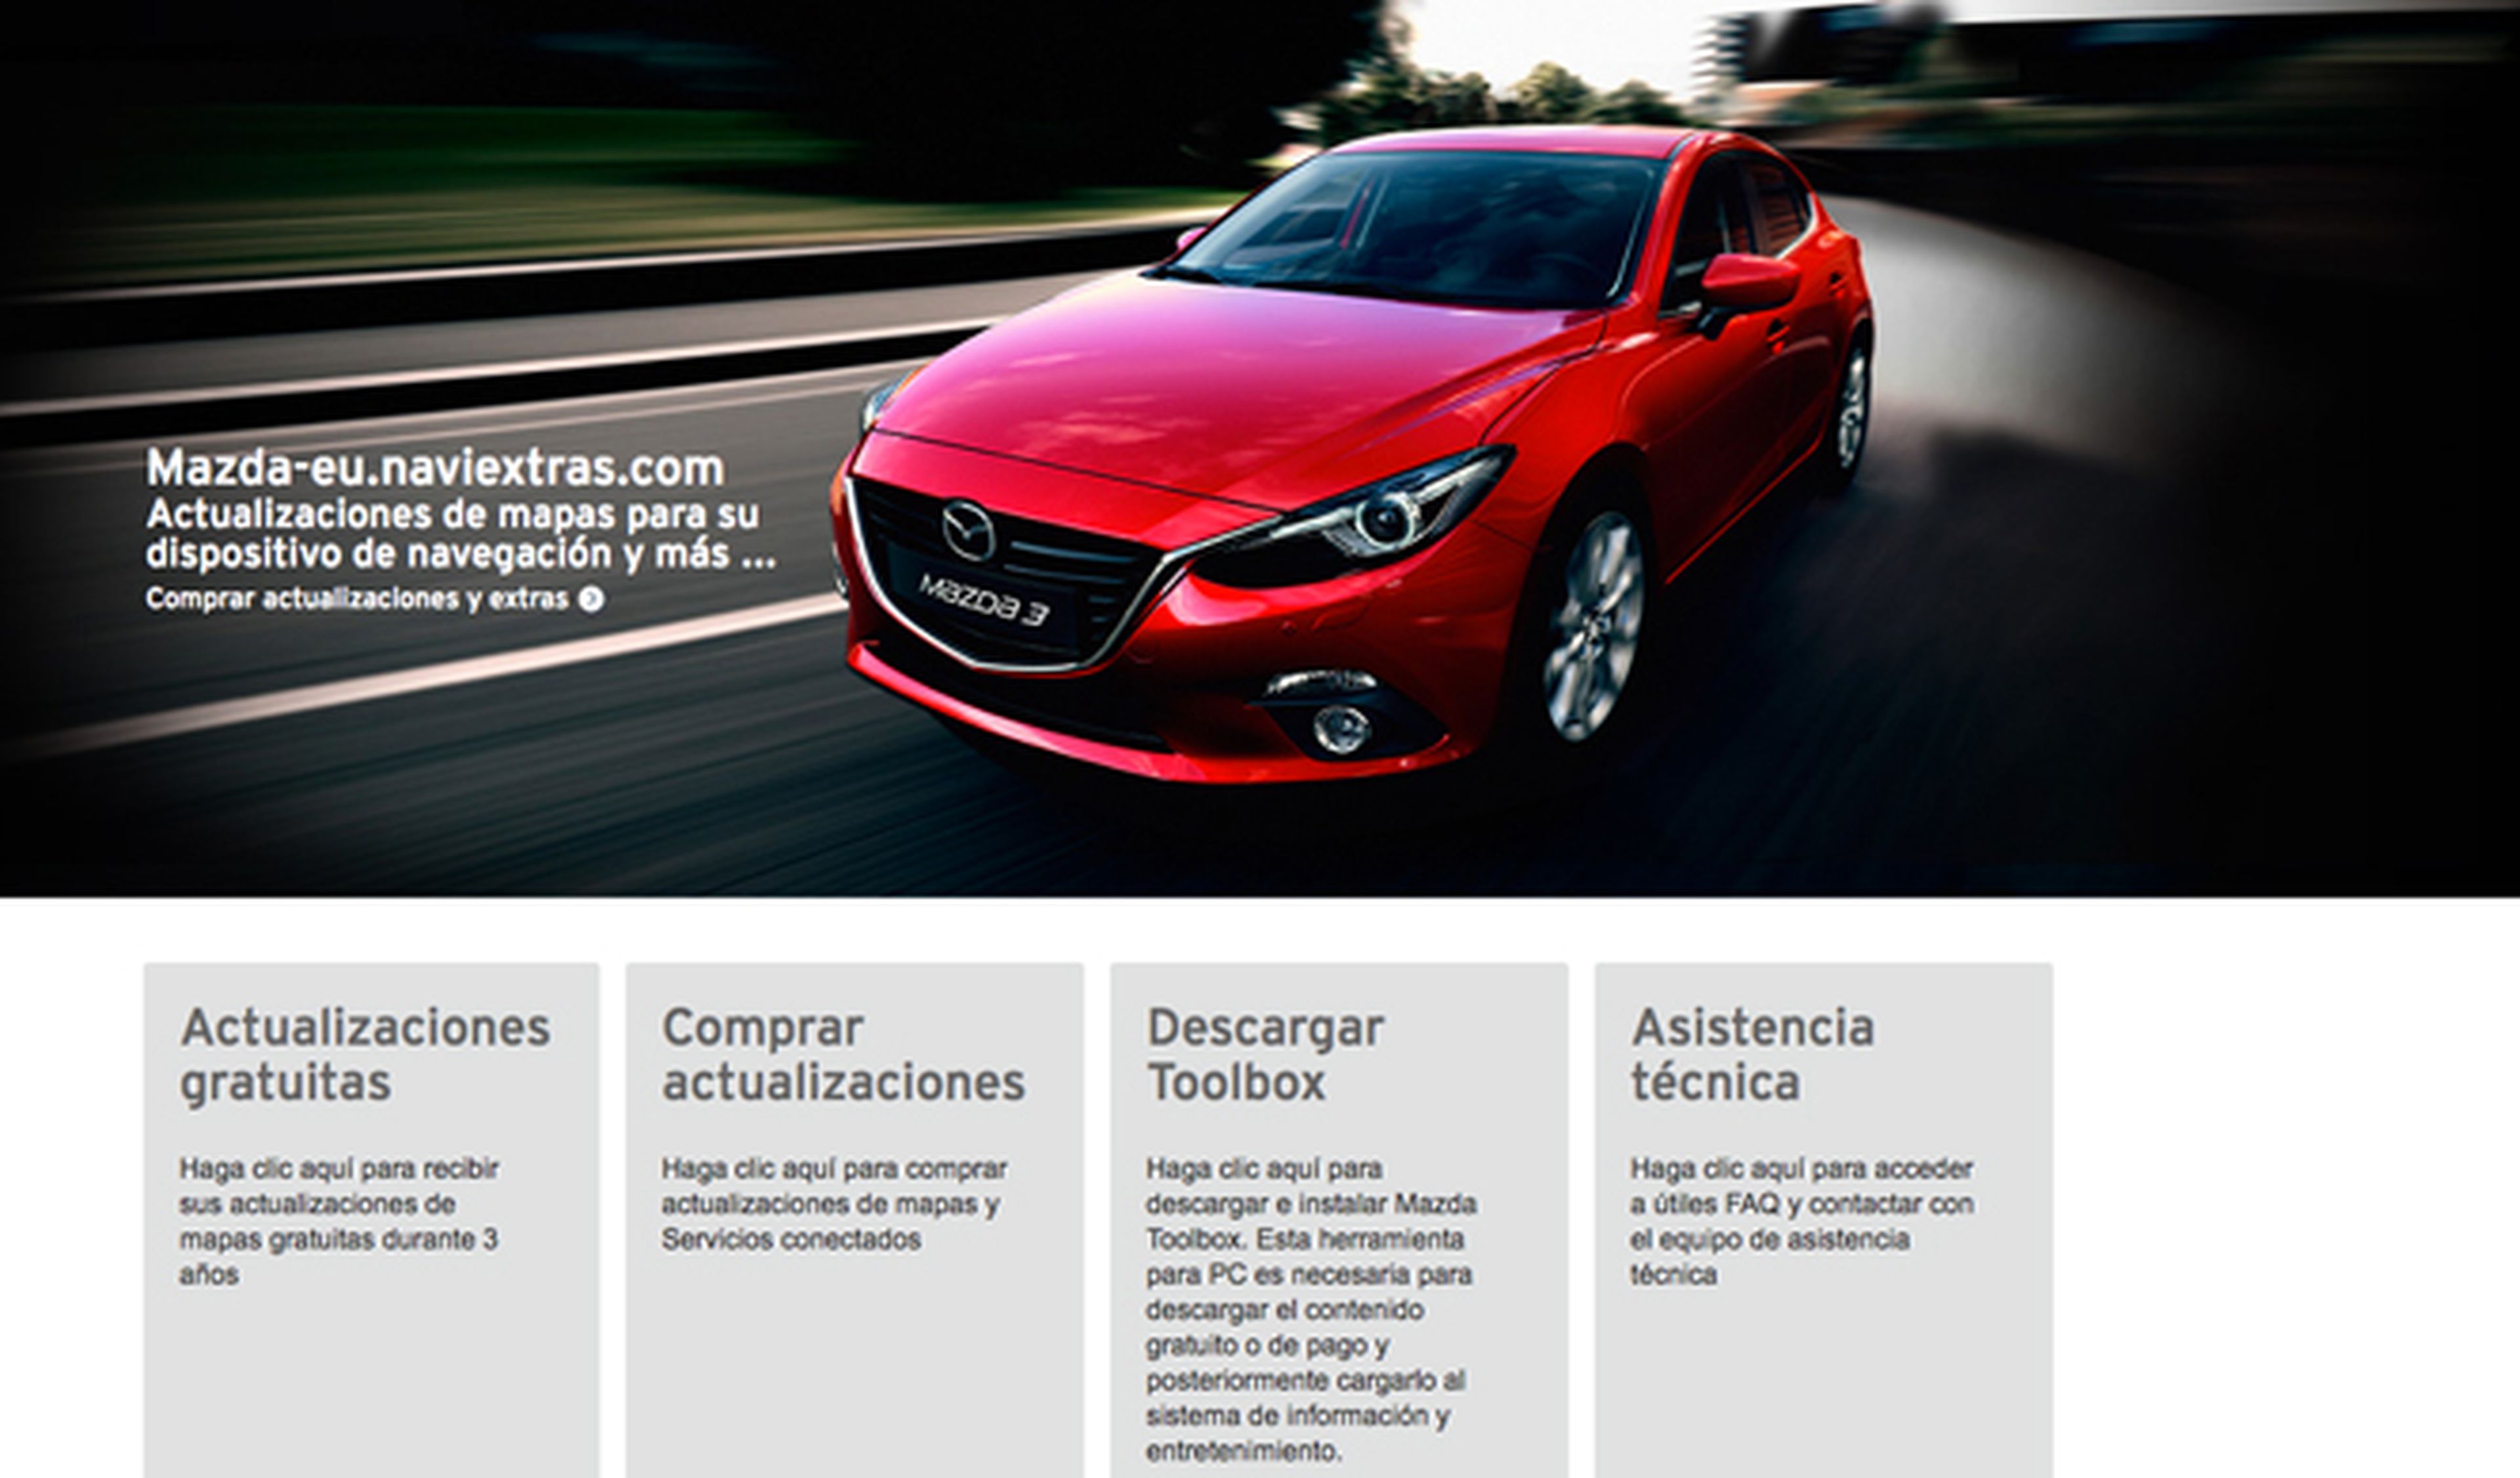 Mazda Toolbox: ¿lo conoces?